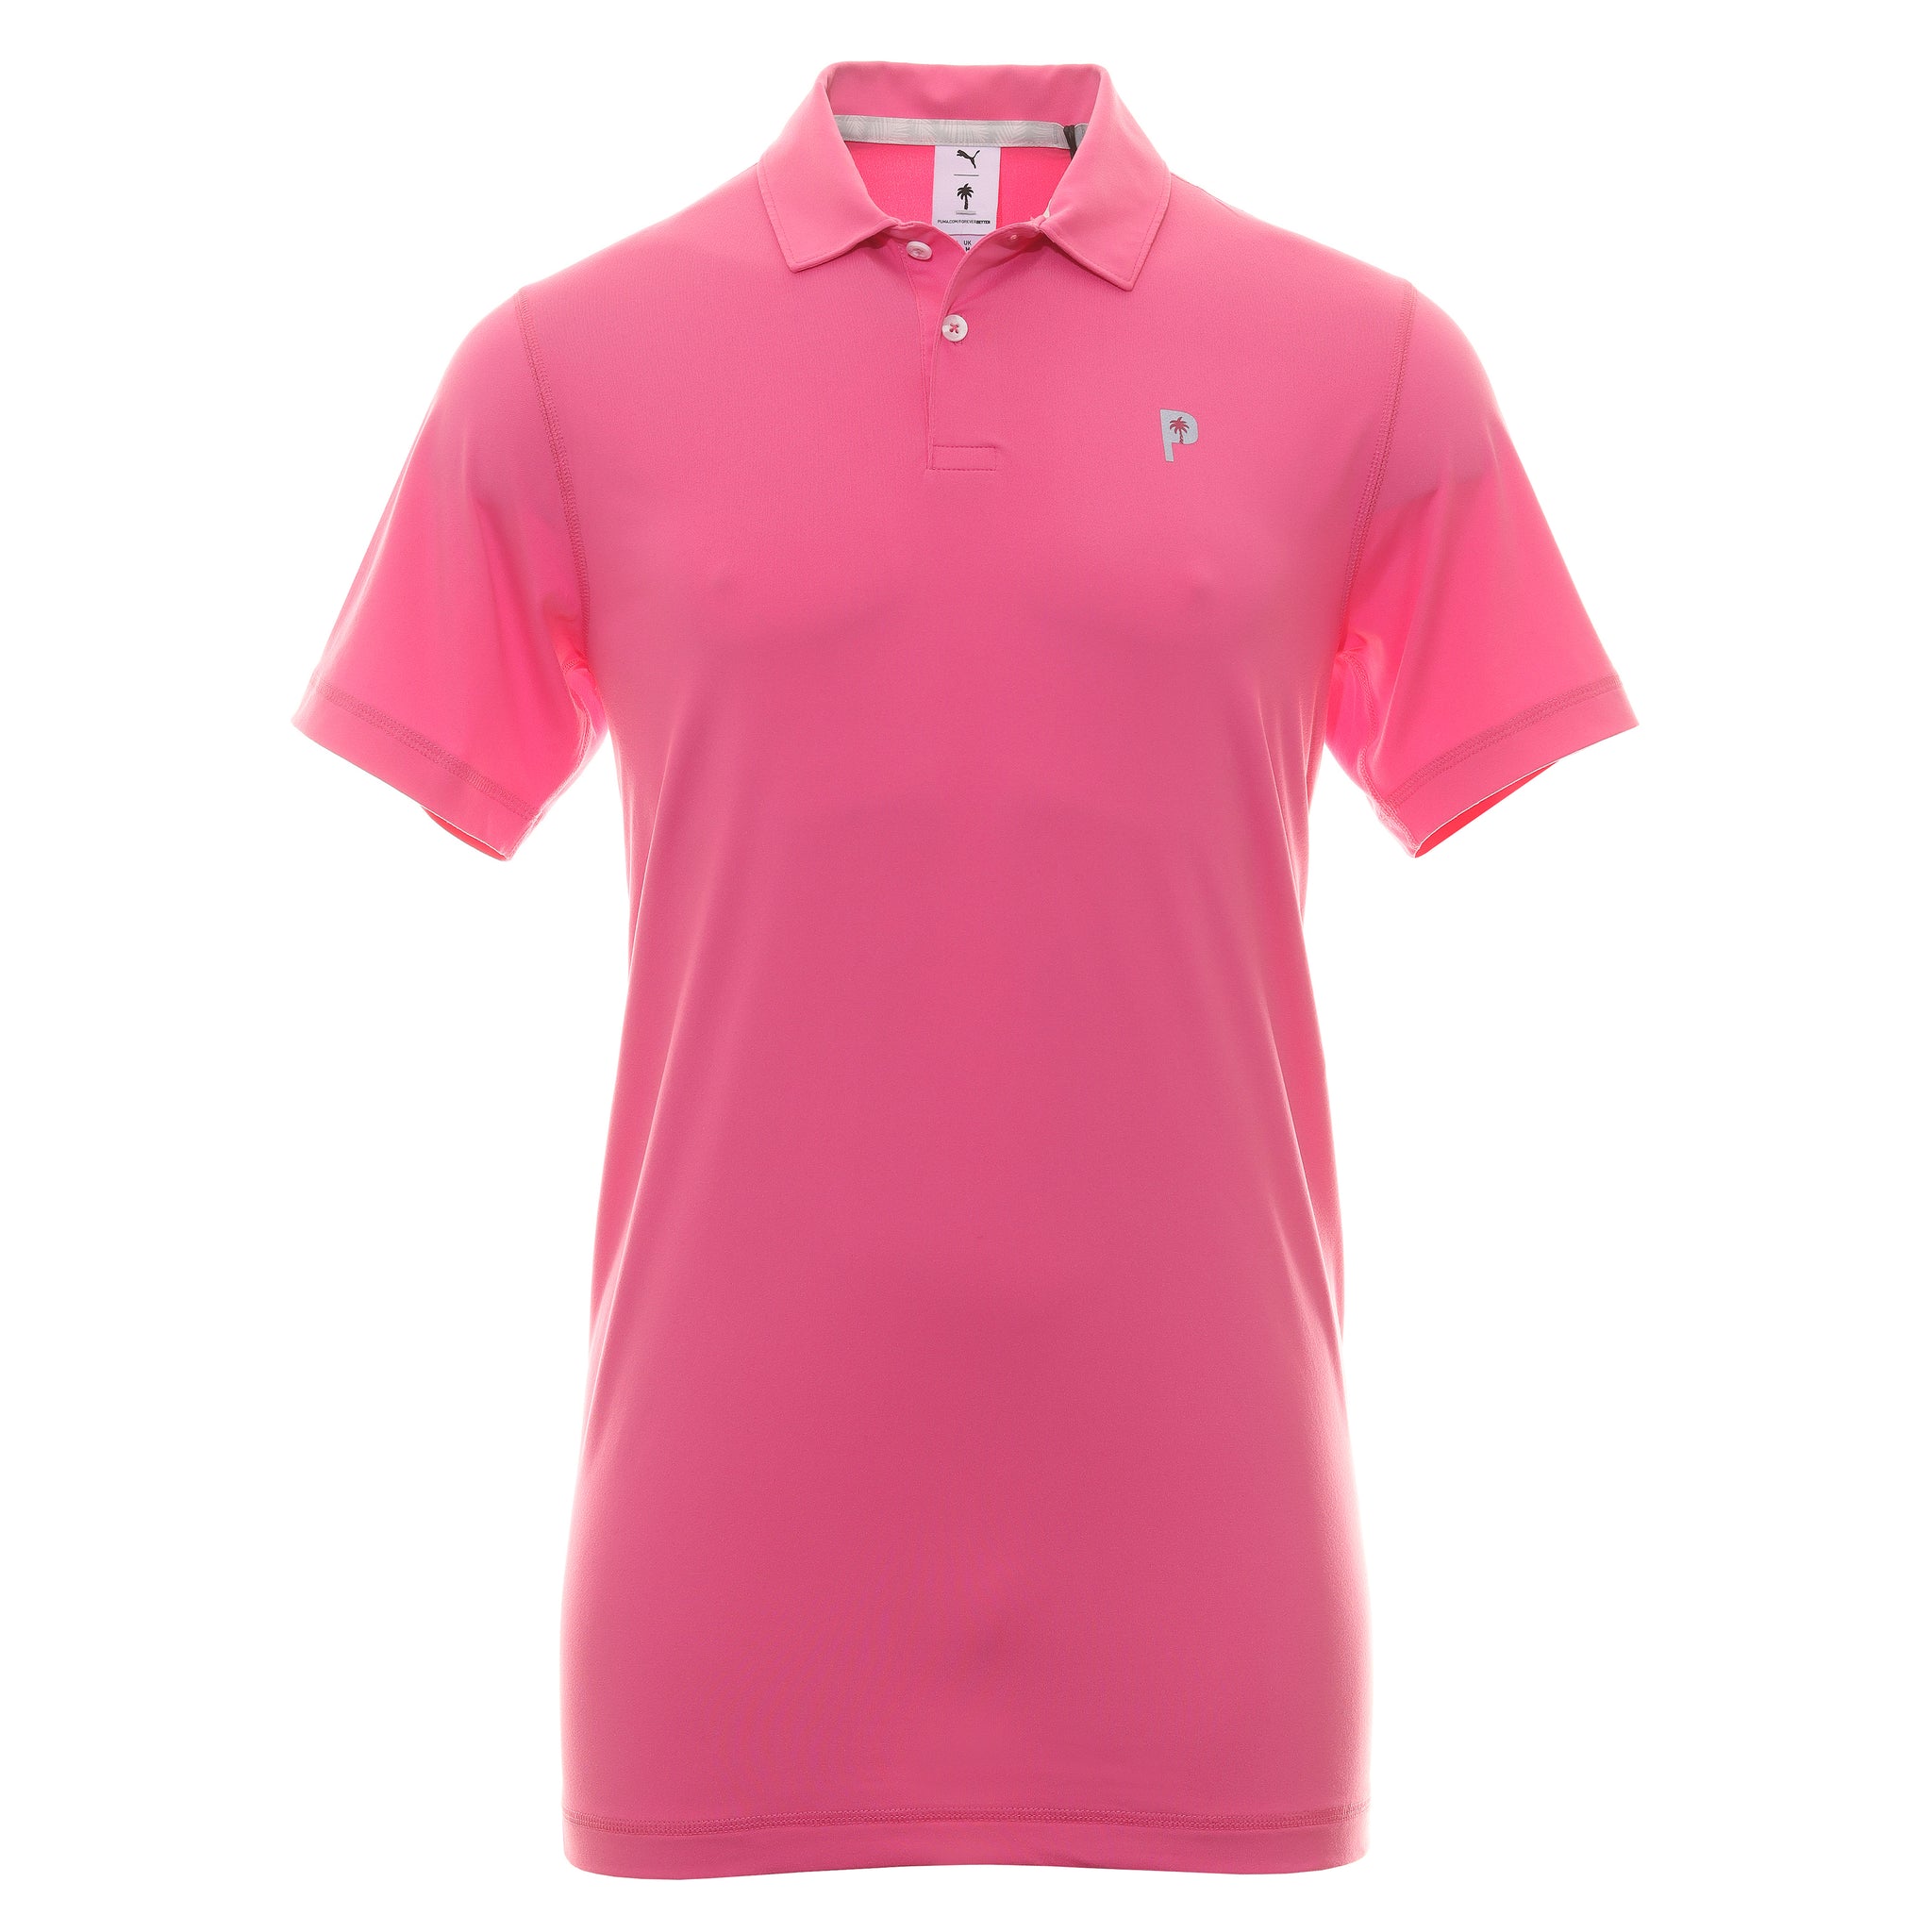 Puma Golf x PTC Shirt 539201 Charming Pink 04 & Function18